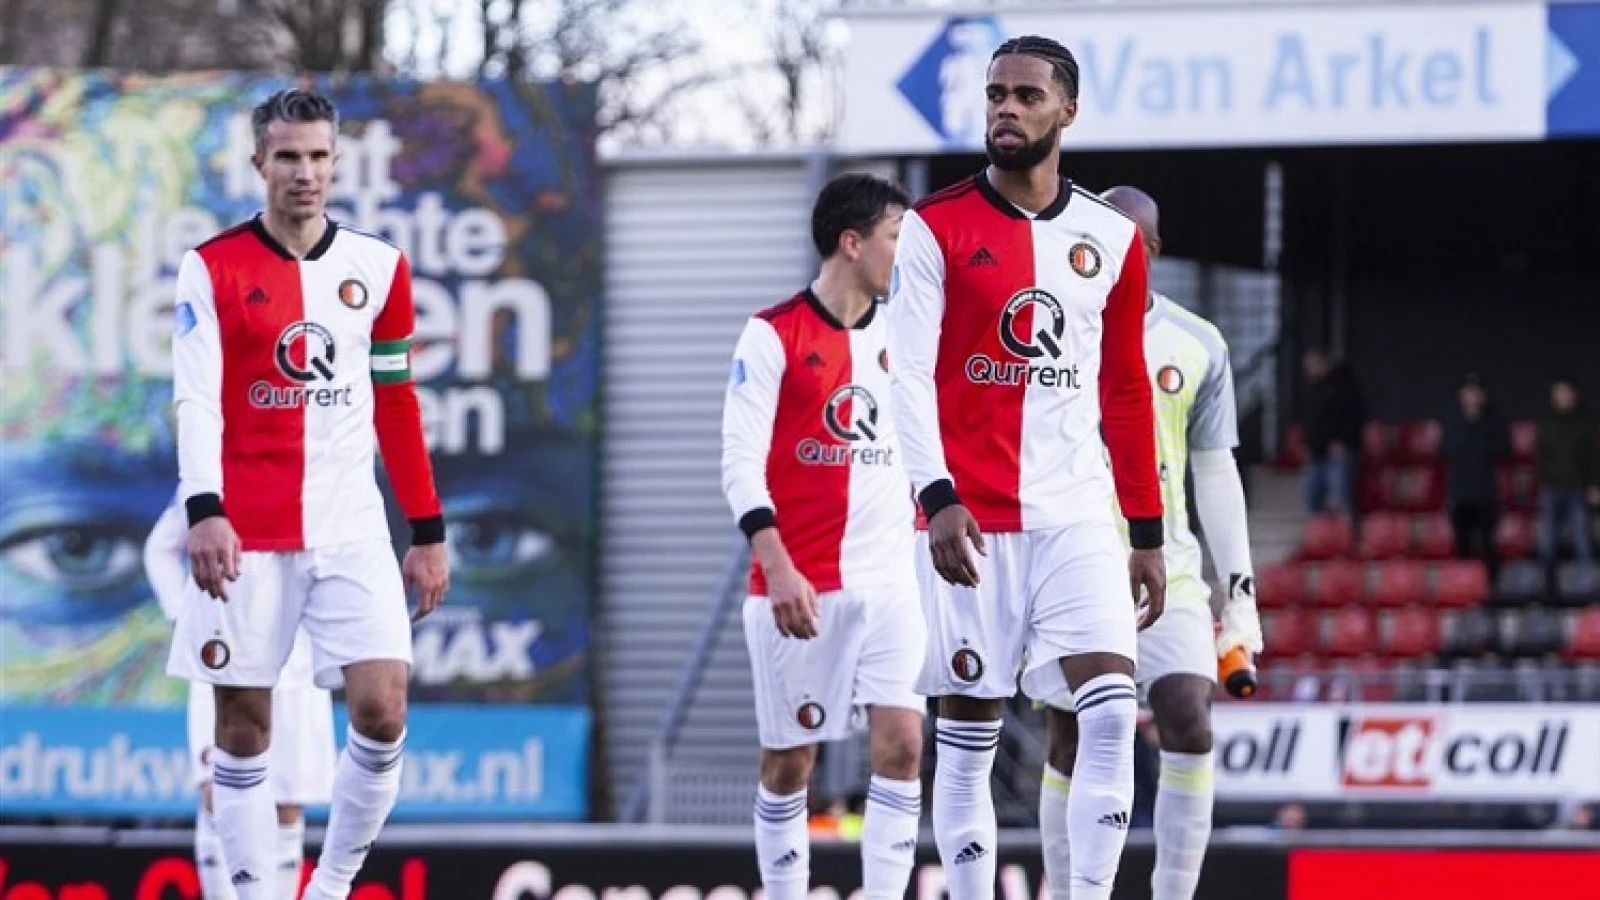 De kranten: 'Feyenoord voer voor psychologen'